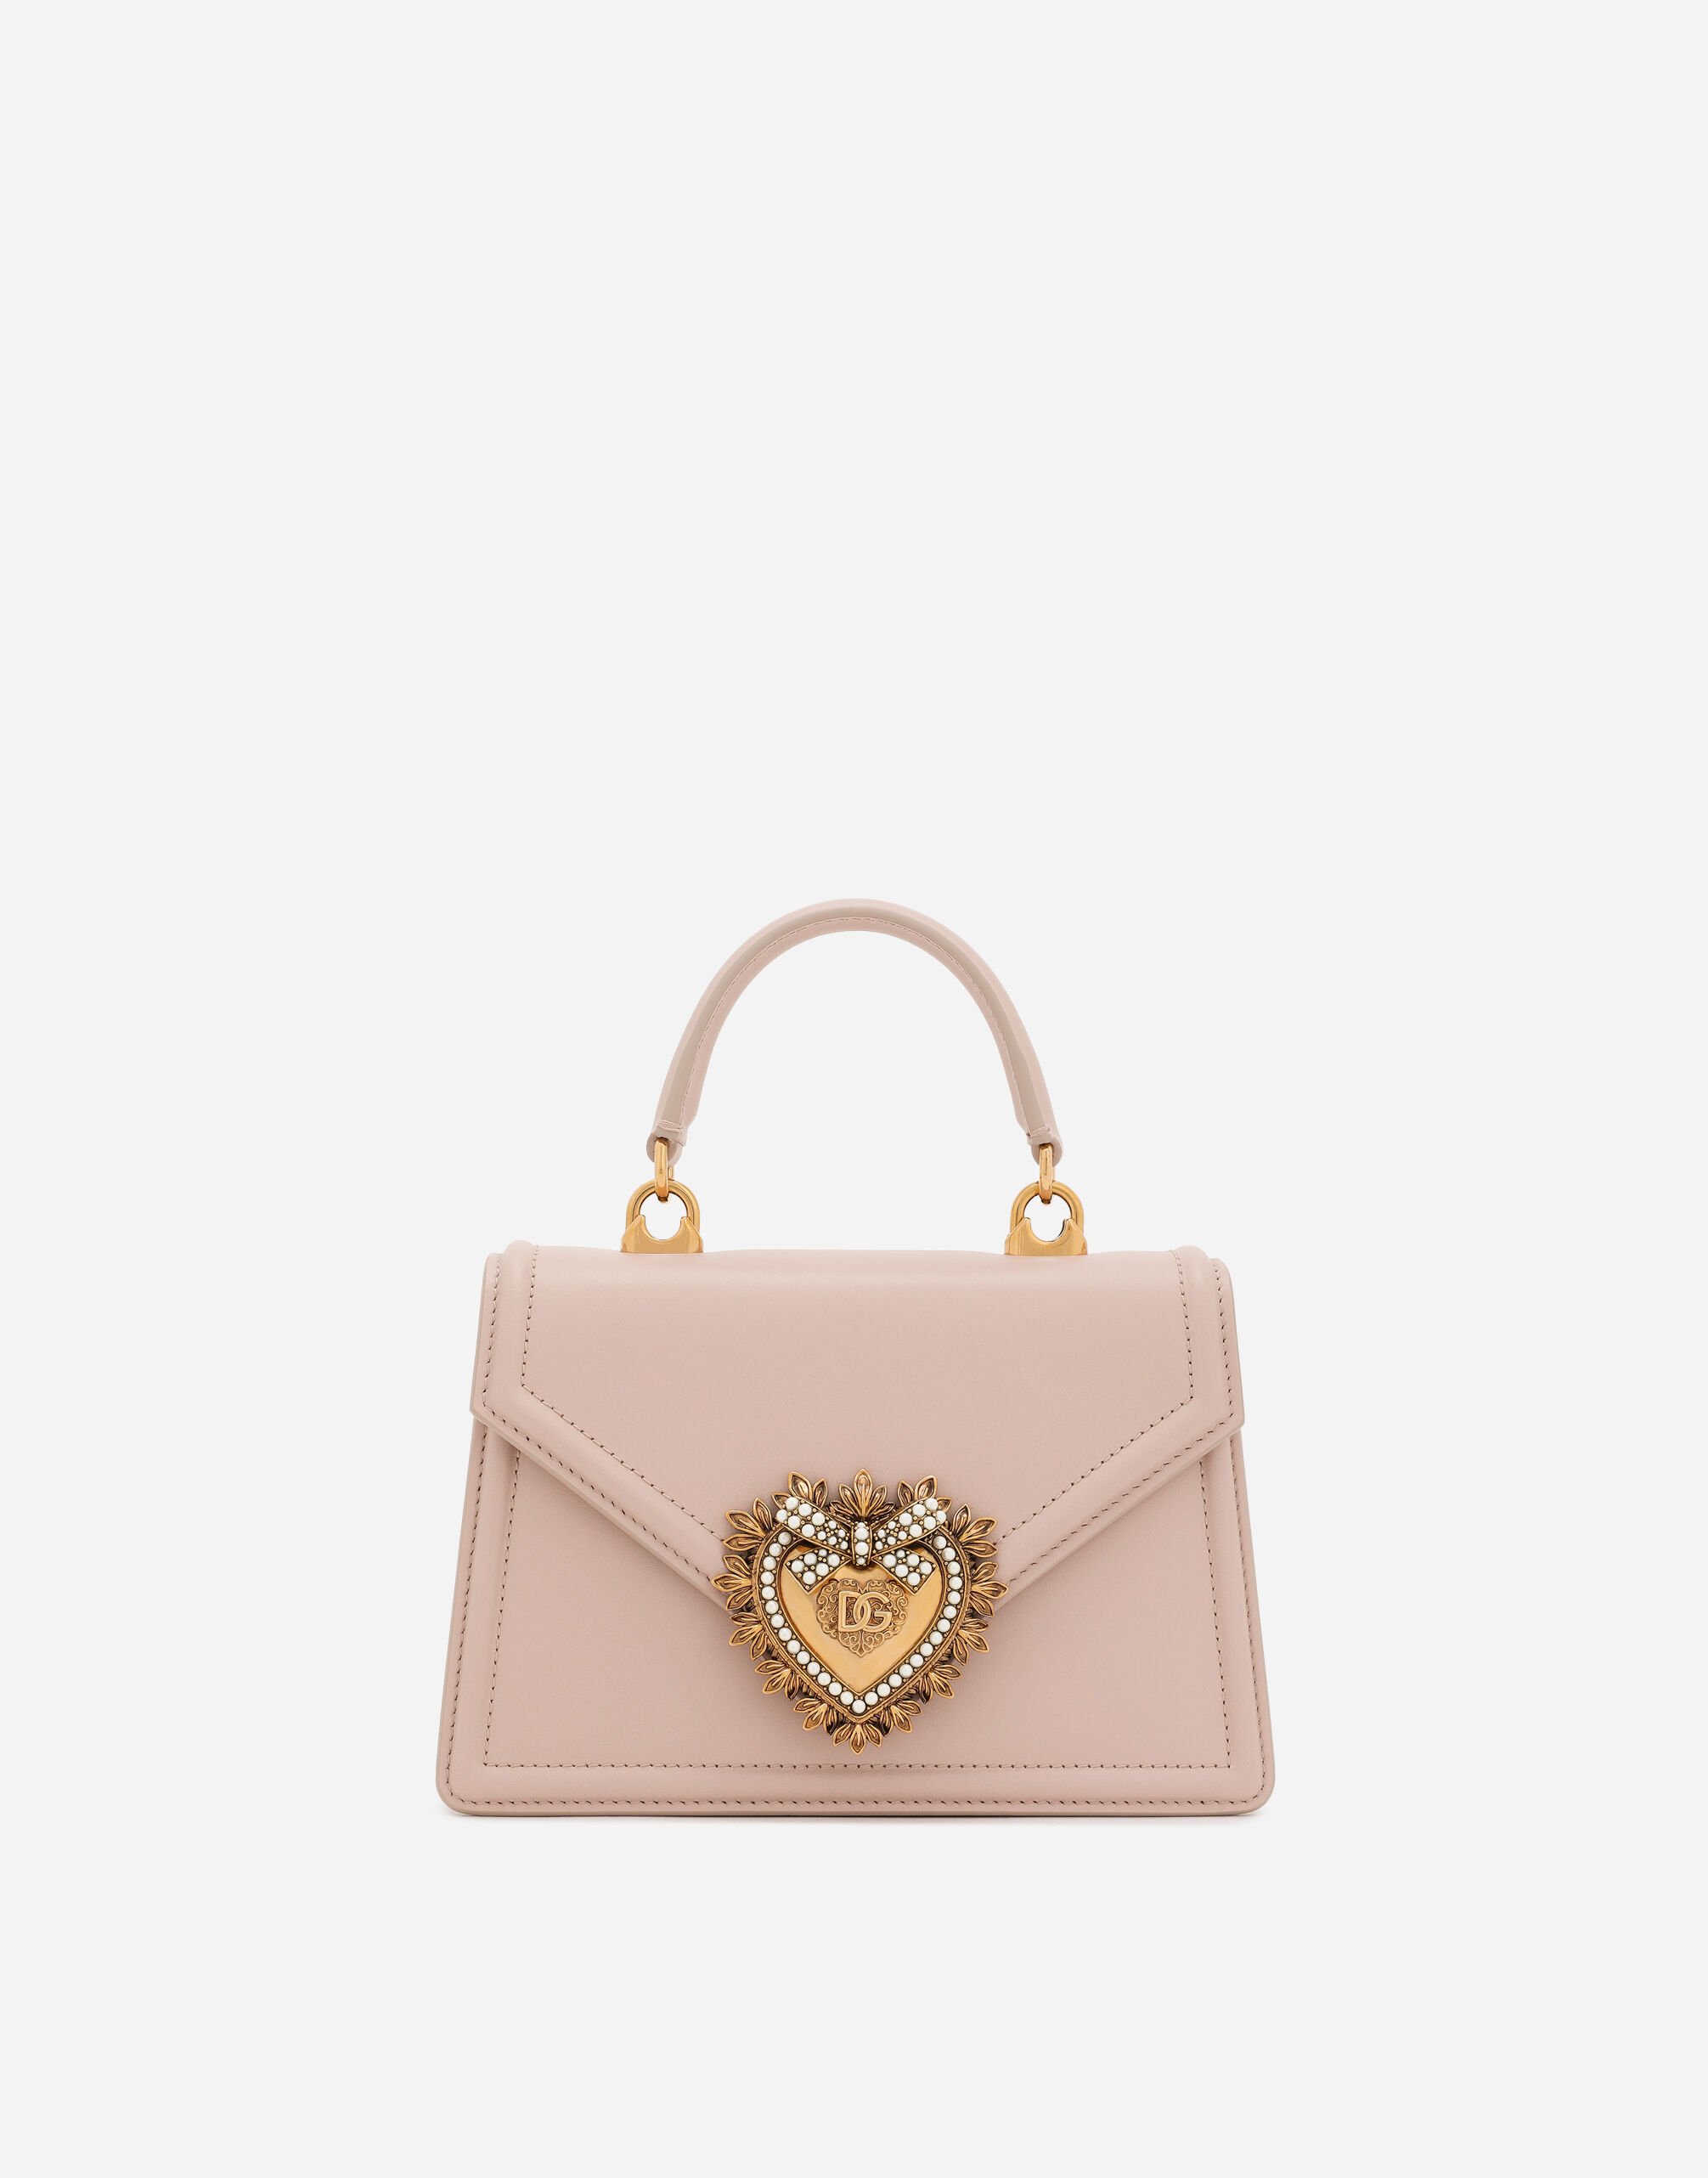 Dolce & Gabbana Small smooth calfskin Devotion bag Pink BB6003A1001